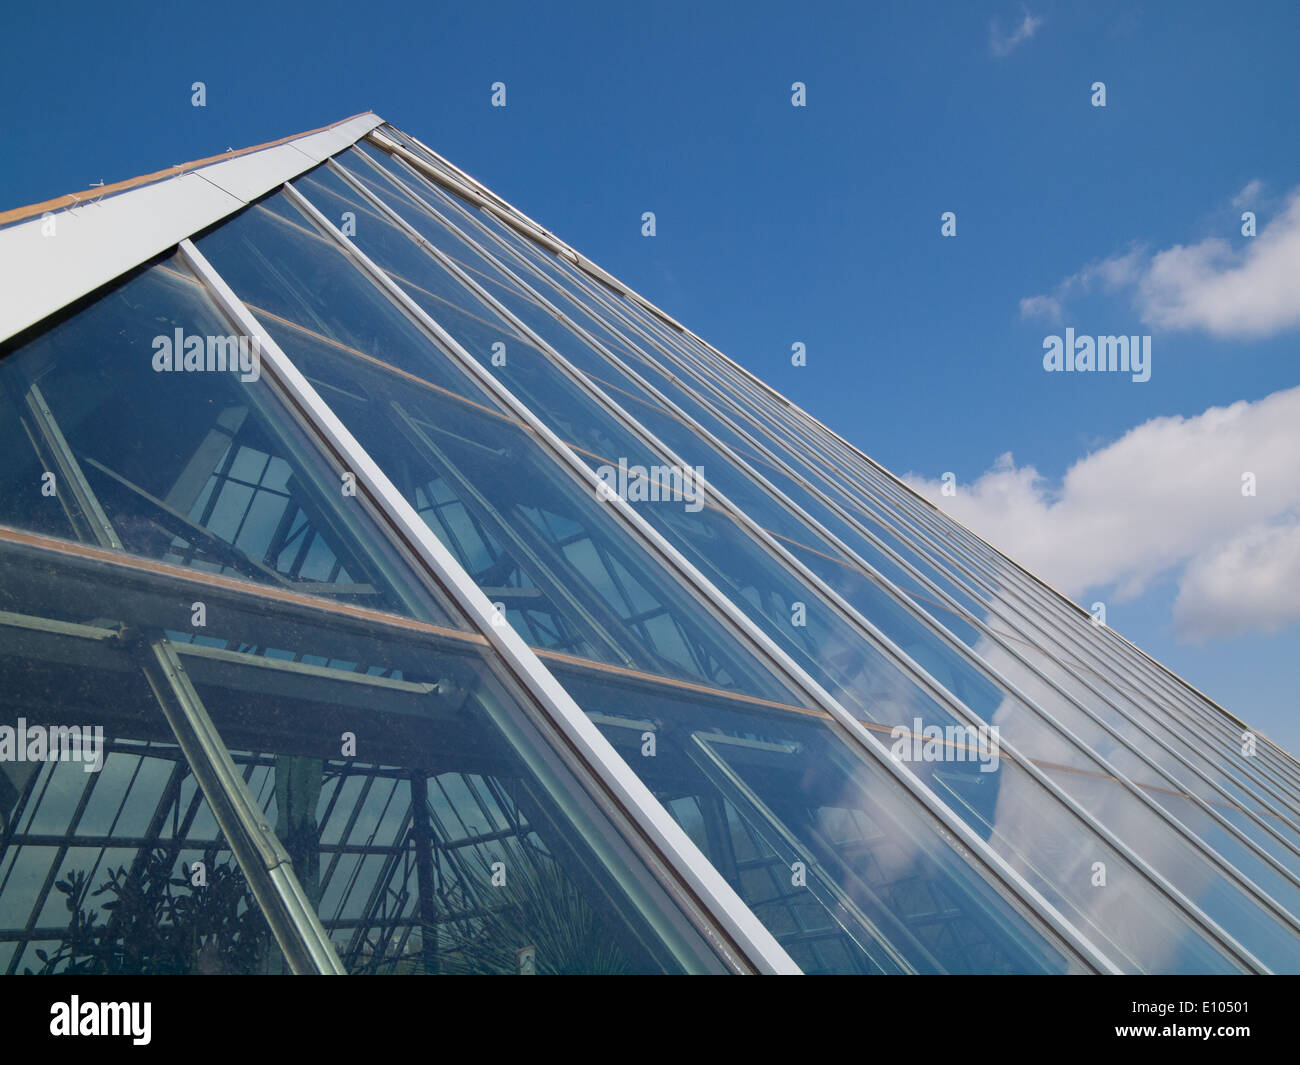 Les pyramides de verre de la Muttart Conservatory, un jardin botanique et noté monument d'Edmonton, Alberta, Canada. Banque D'Images